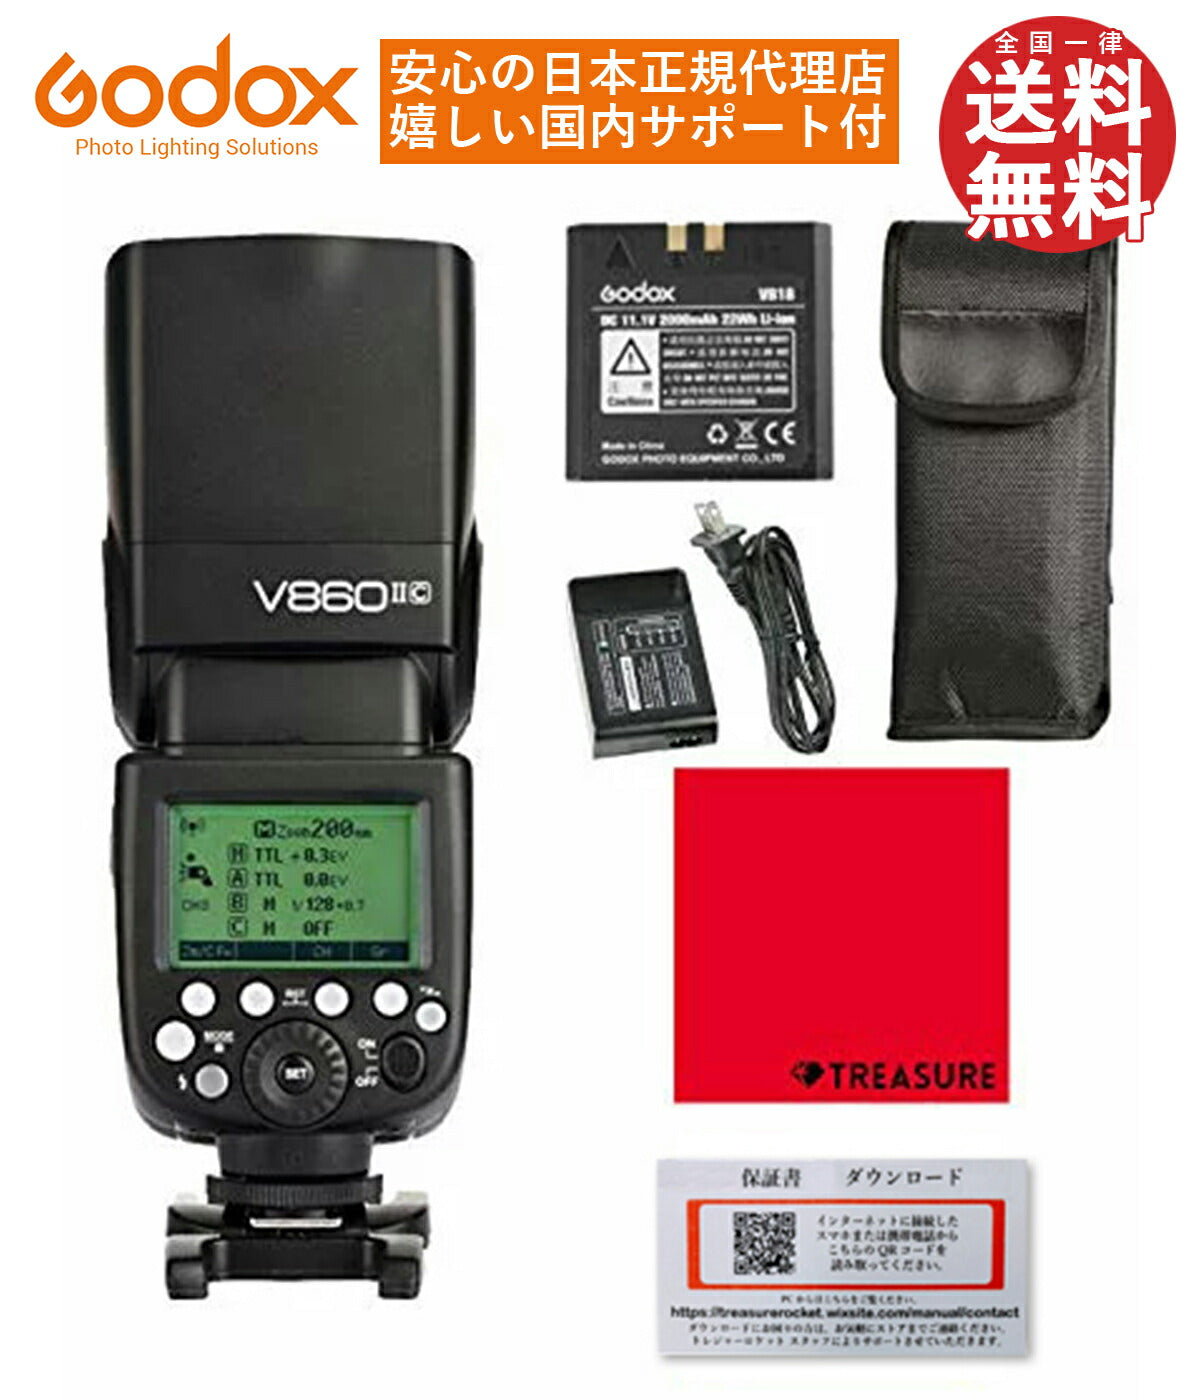 日本正規代理店GodoxVingV860IICGN60スピードライトフラッシュストロボTTL1/8000sHSSCanonキャノン対応[1年保証/日本語説明書/クロス付/セット品](V860IIC)